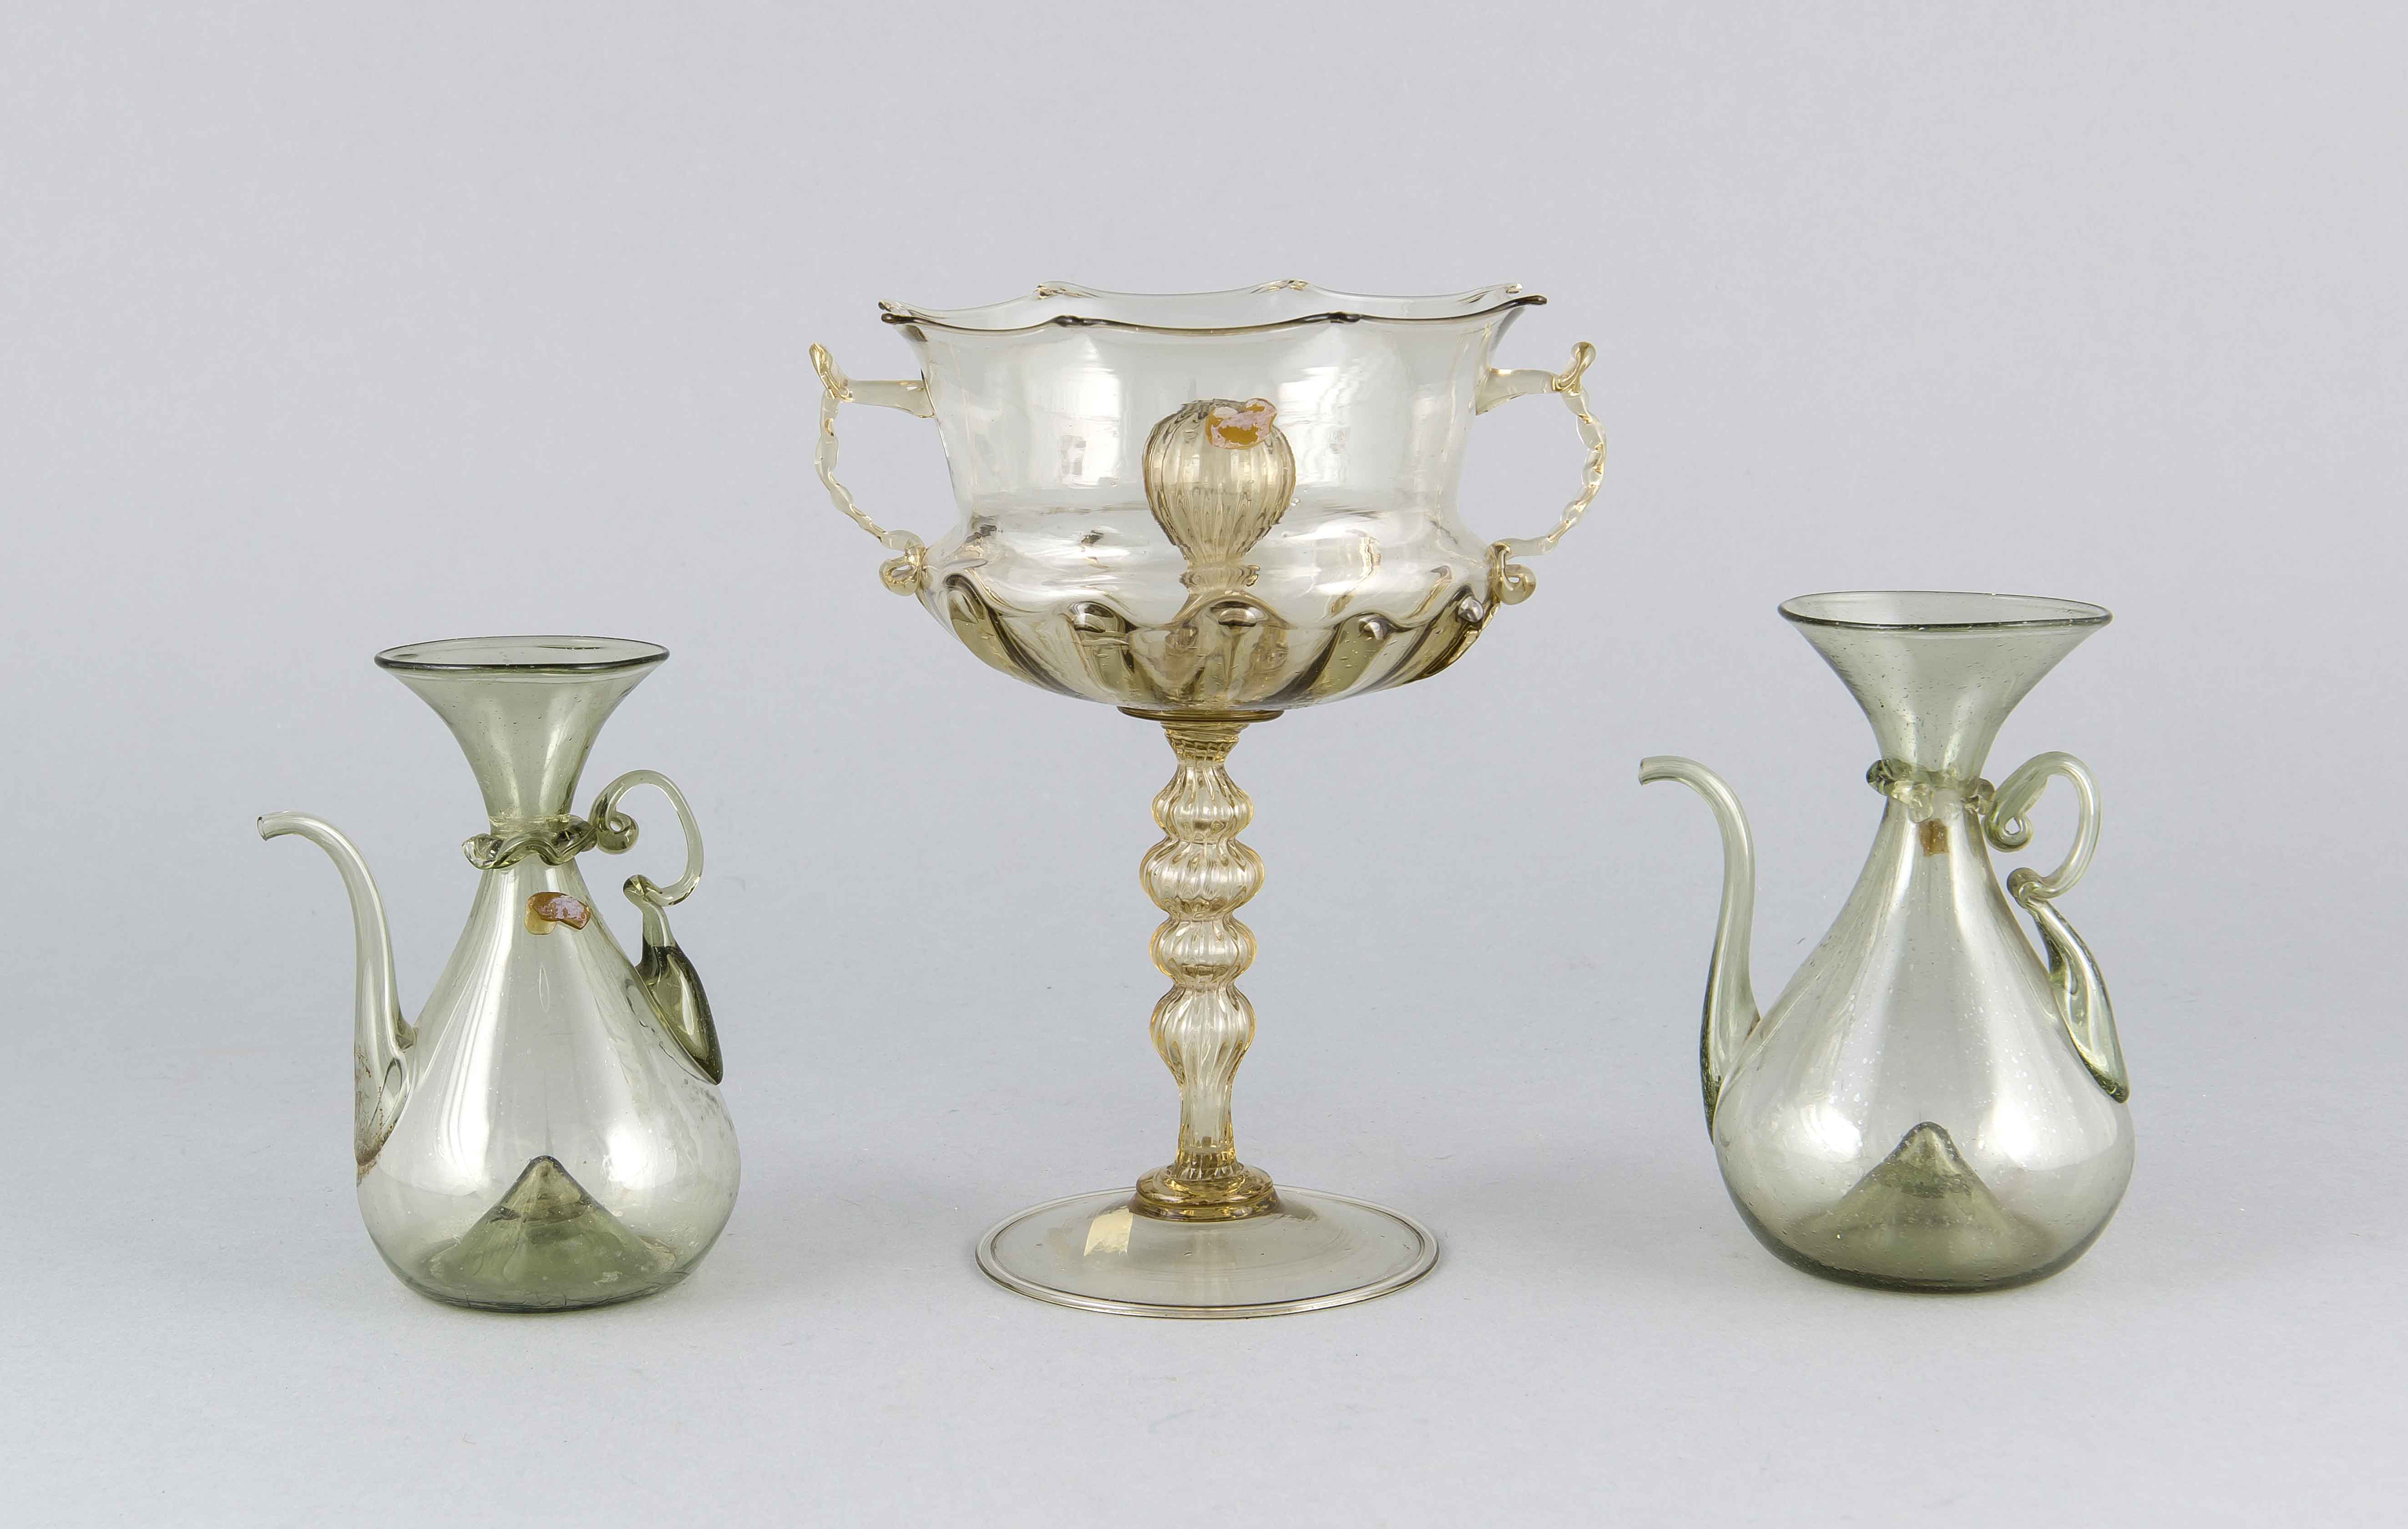 Drei Teile Glas, Murano, 19. Jh., 2 Kännchen, grünliches Glas, bauchiger Korpus mit